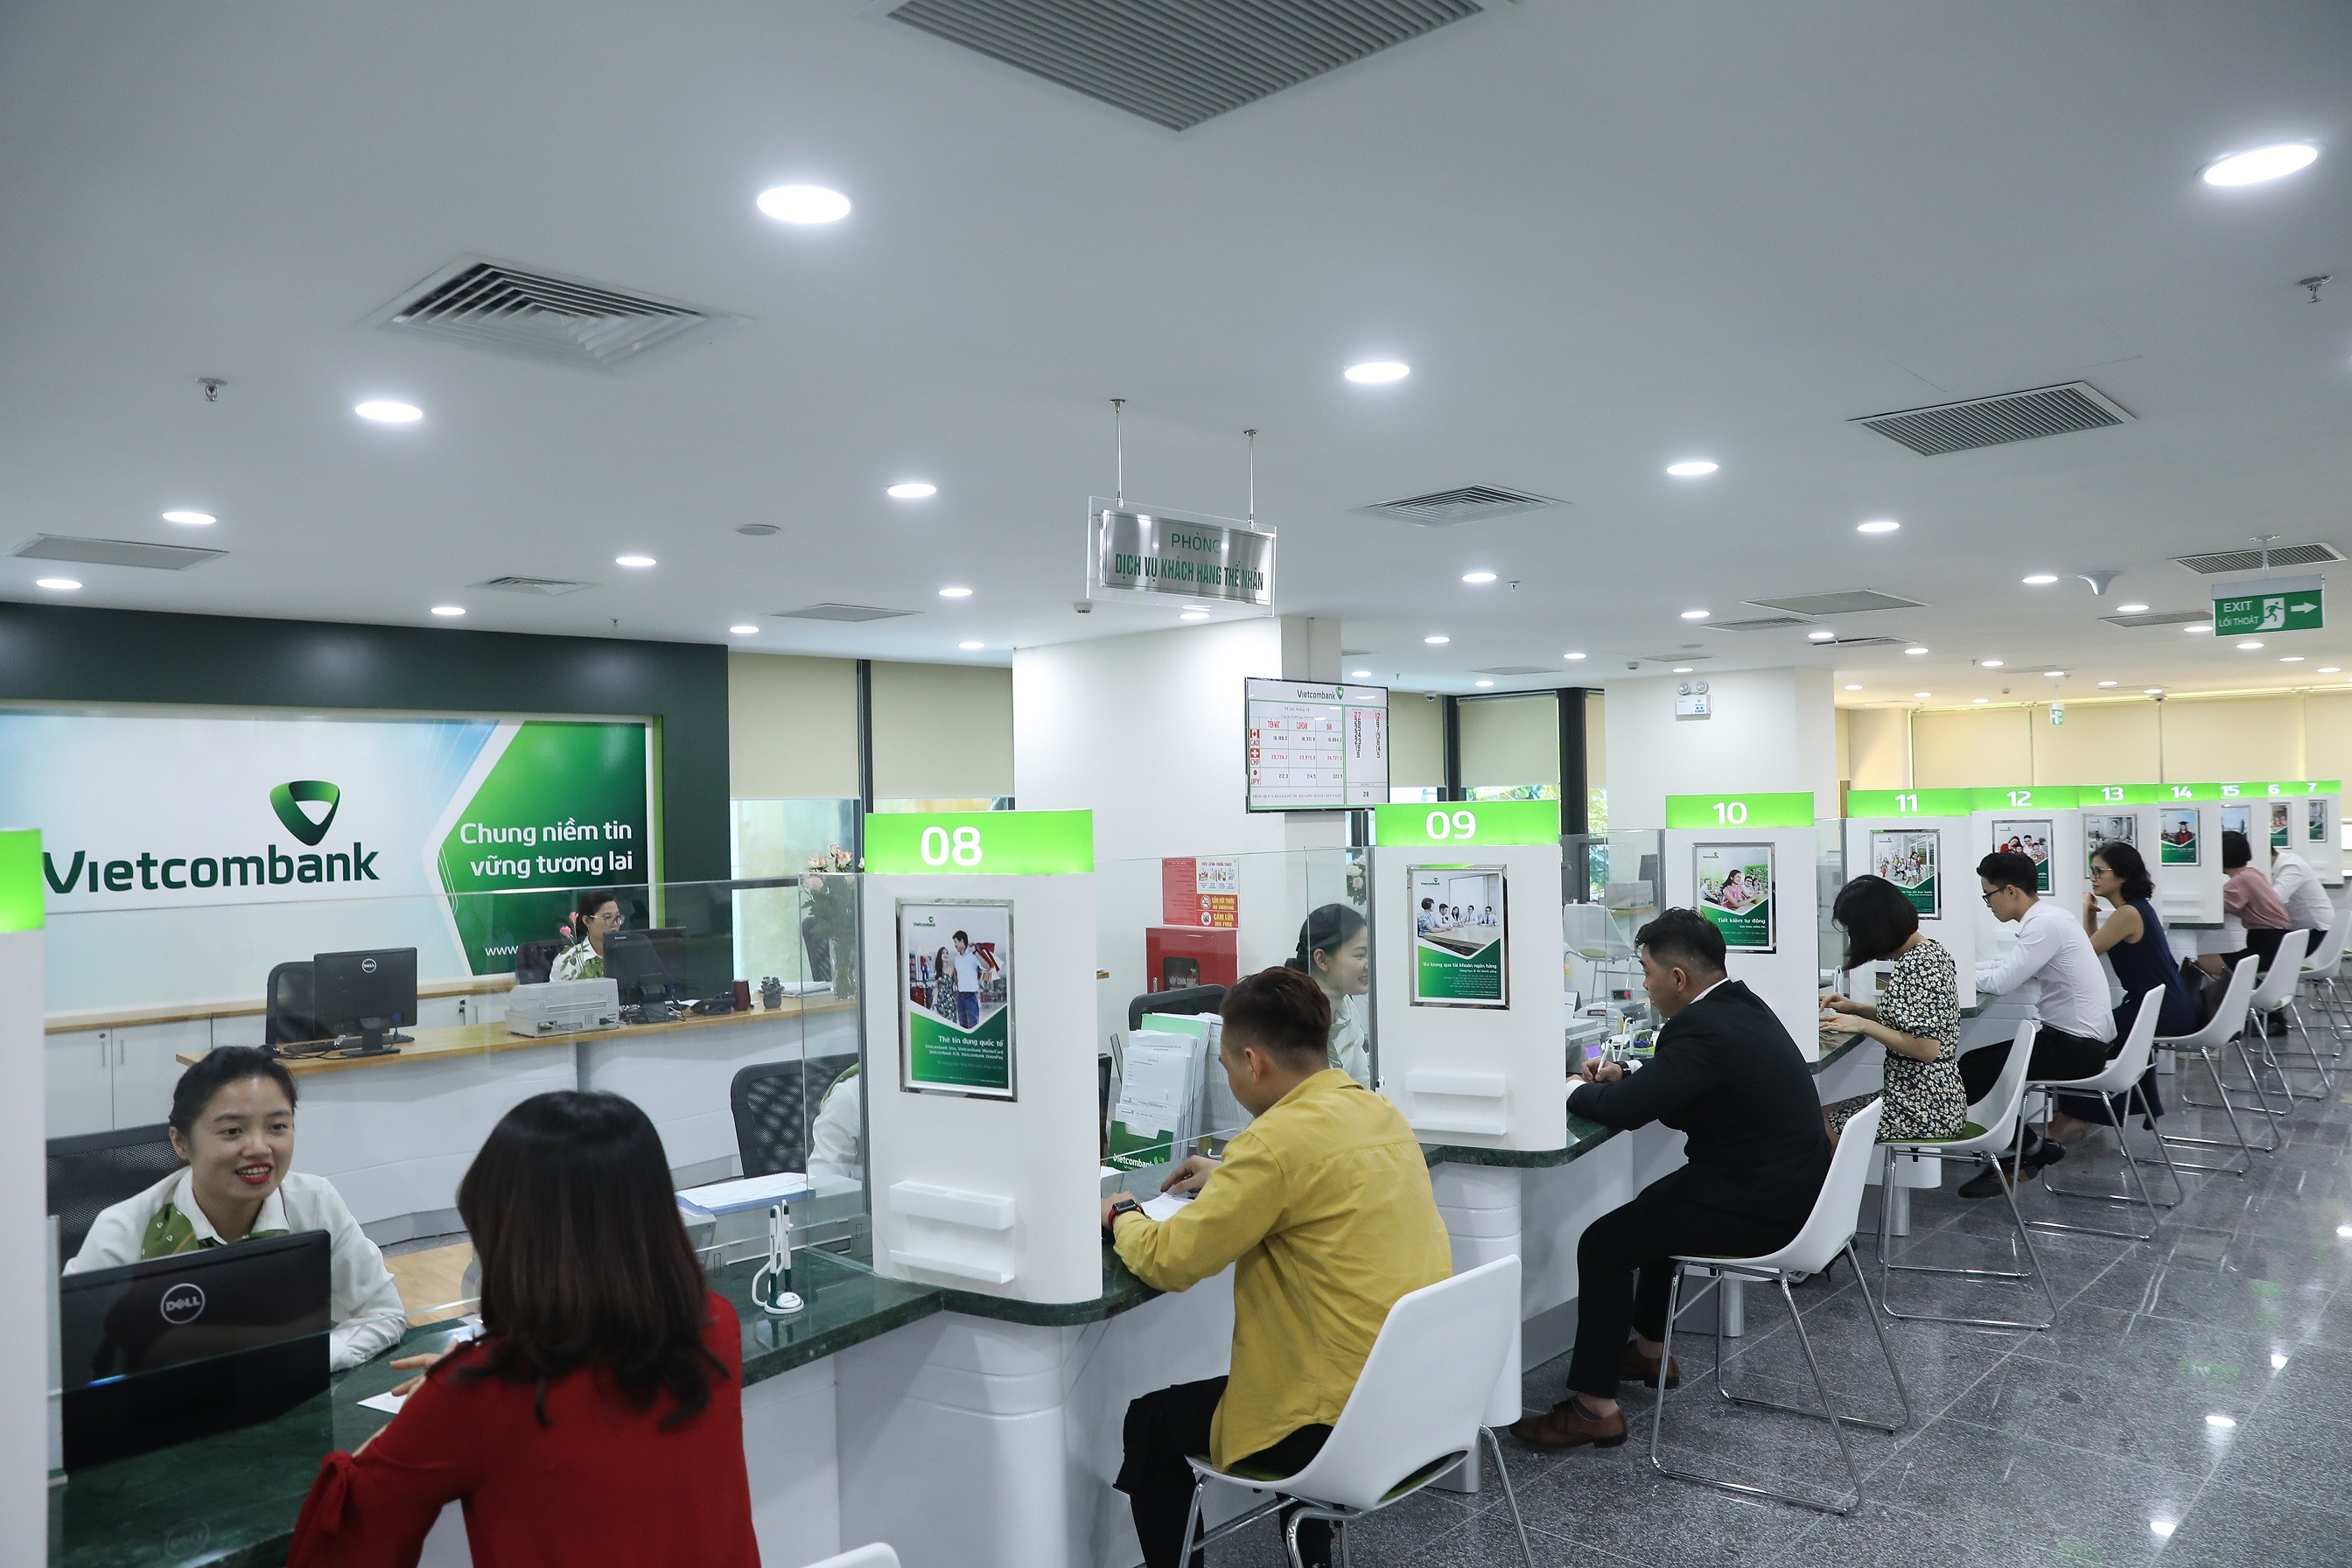 
Ngân hàng Vietcombank giảm đồng loạt lãi vay tới 1%
